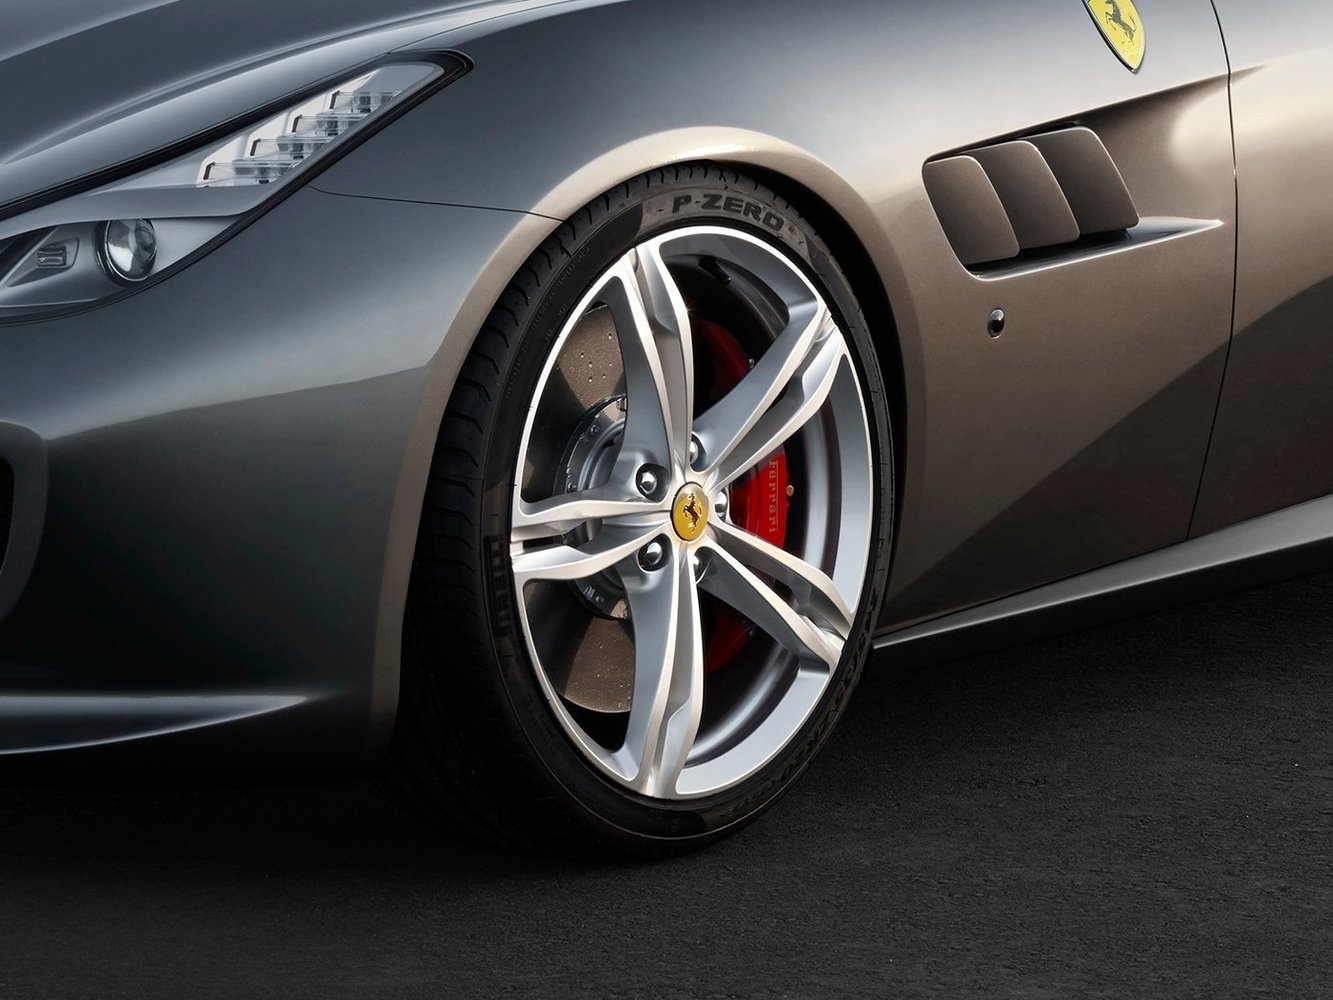 хэтчбек 3 дв. Ferrari GTC4Lusso 2016г выпуска модификация 6.3 AMT (690 л.с.) 4×4